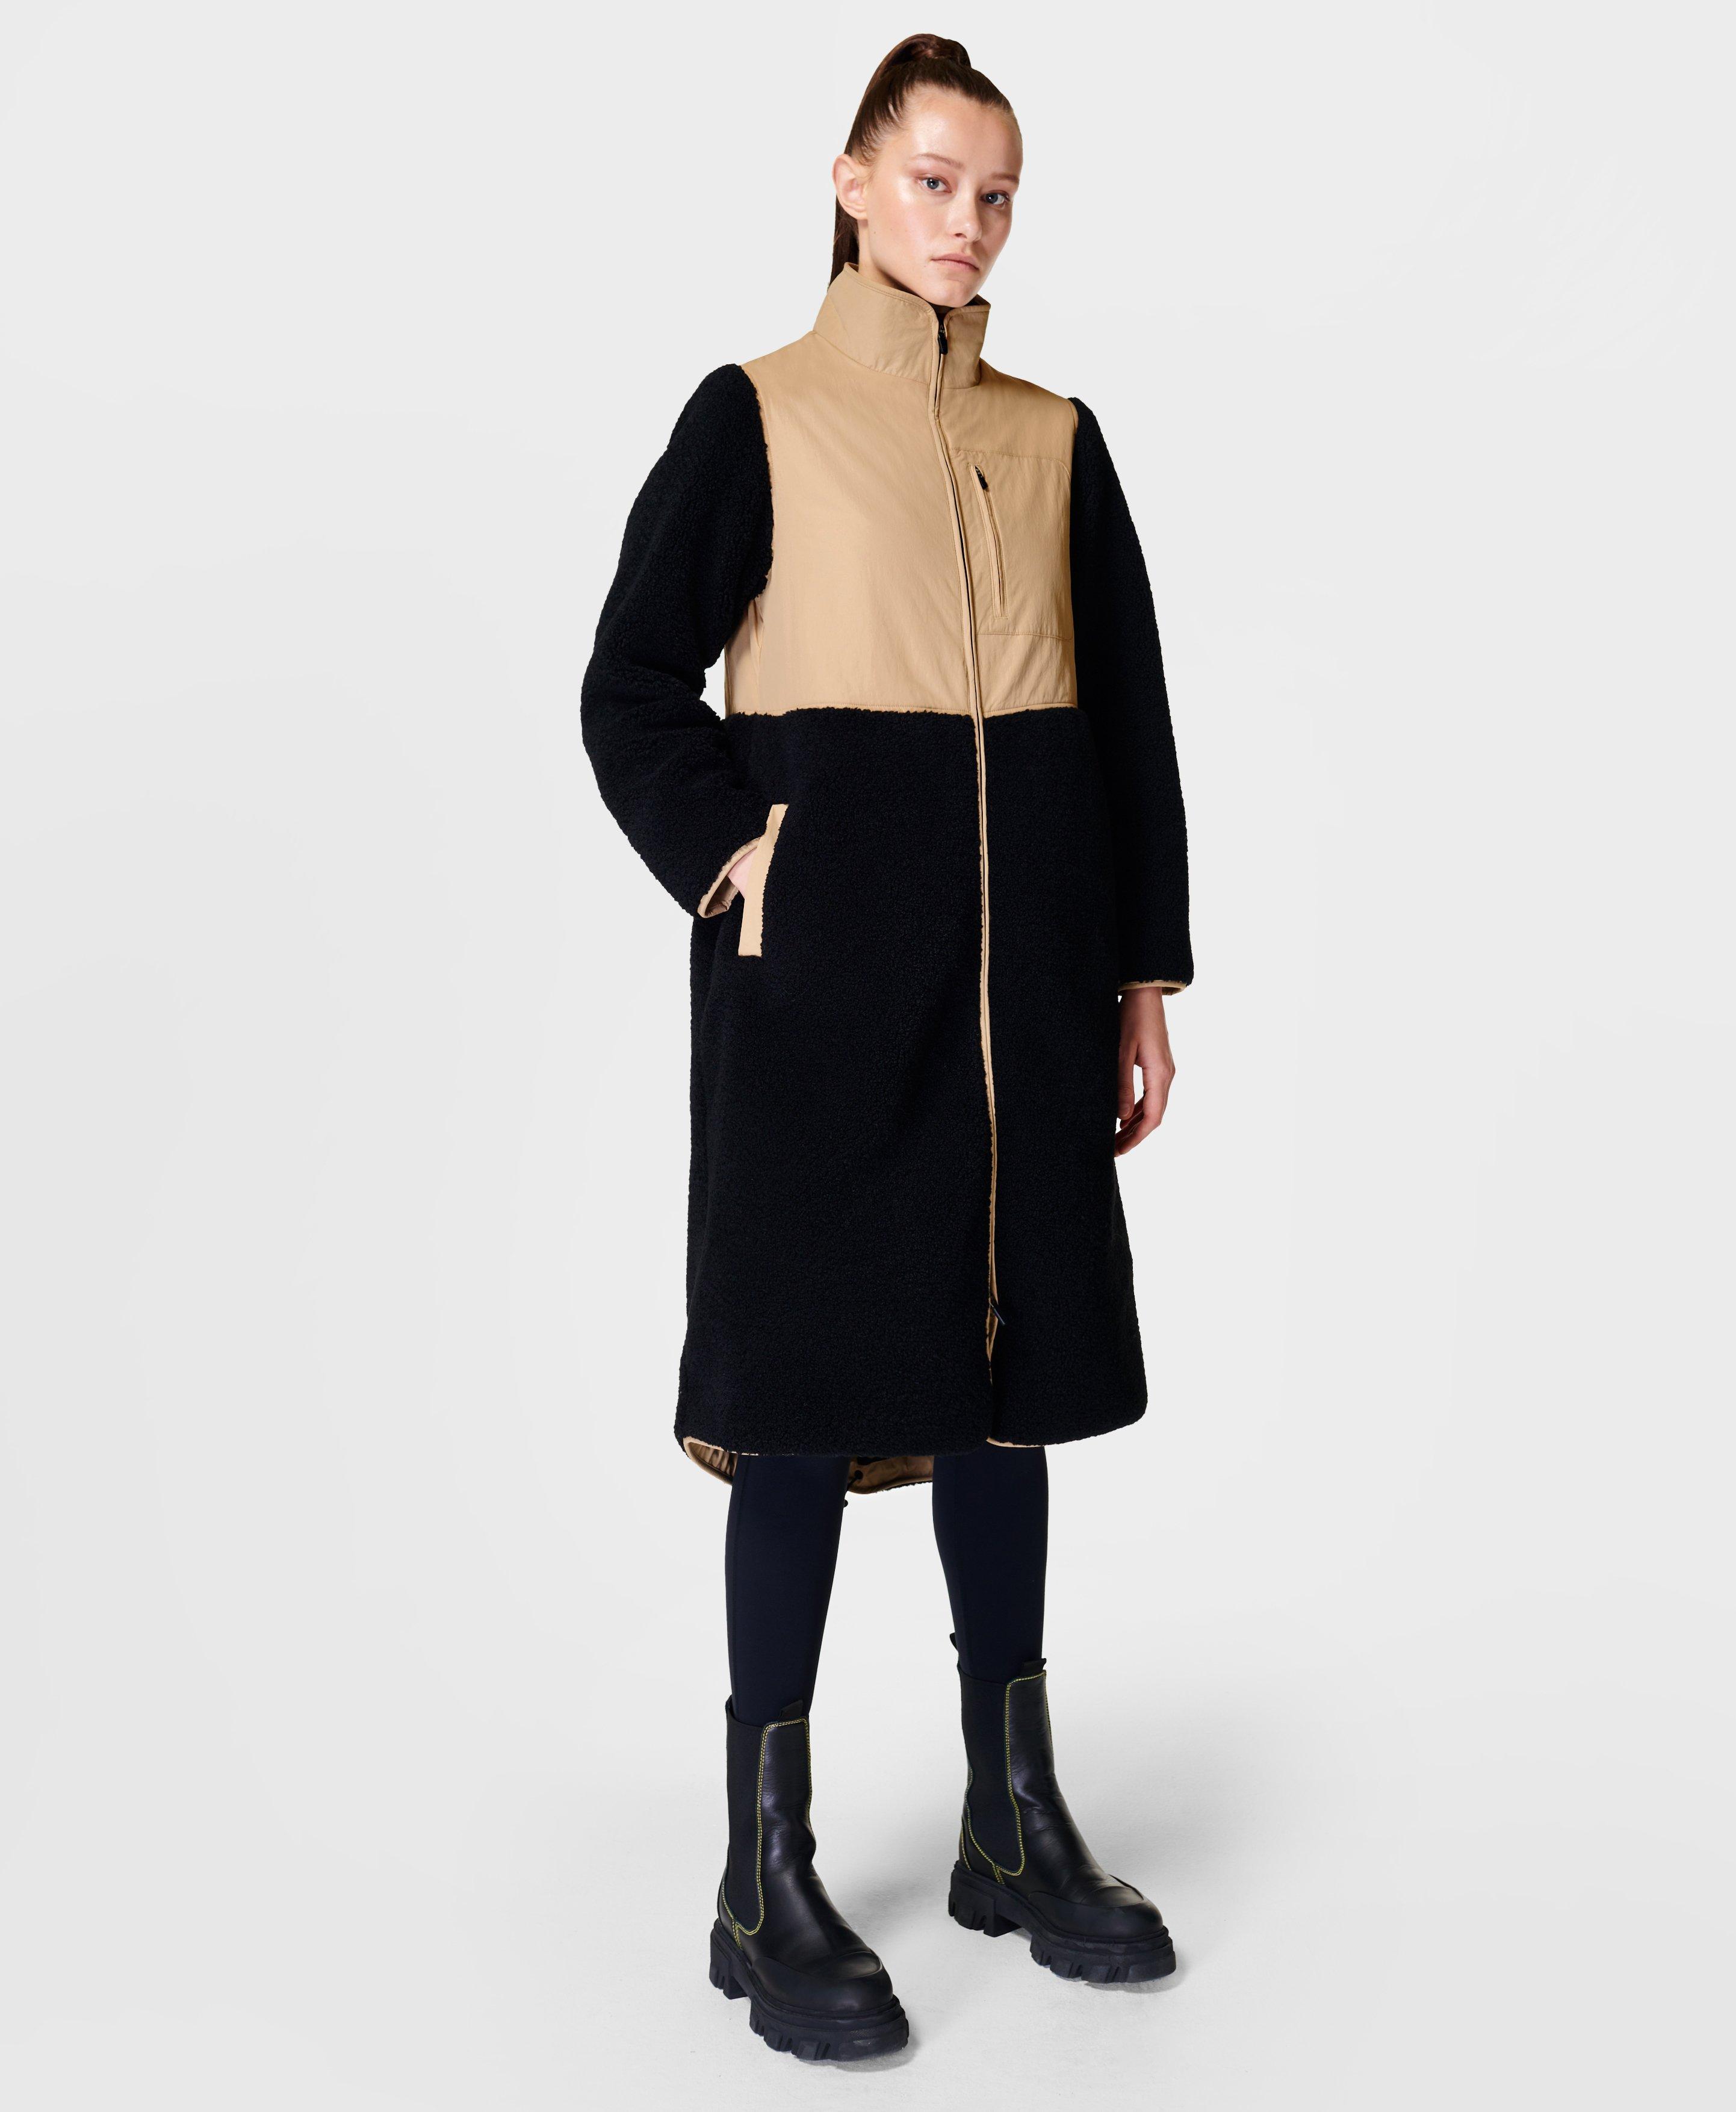 Urban Sherpa Coat - black | Women's Jackets & Coats | www